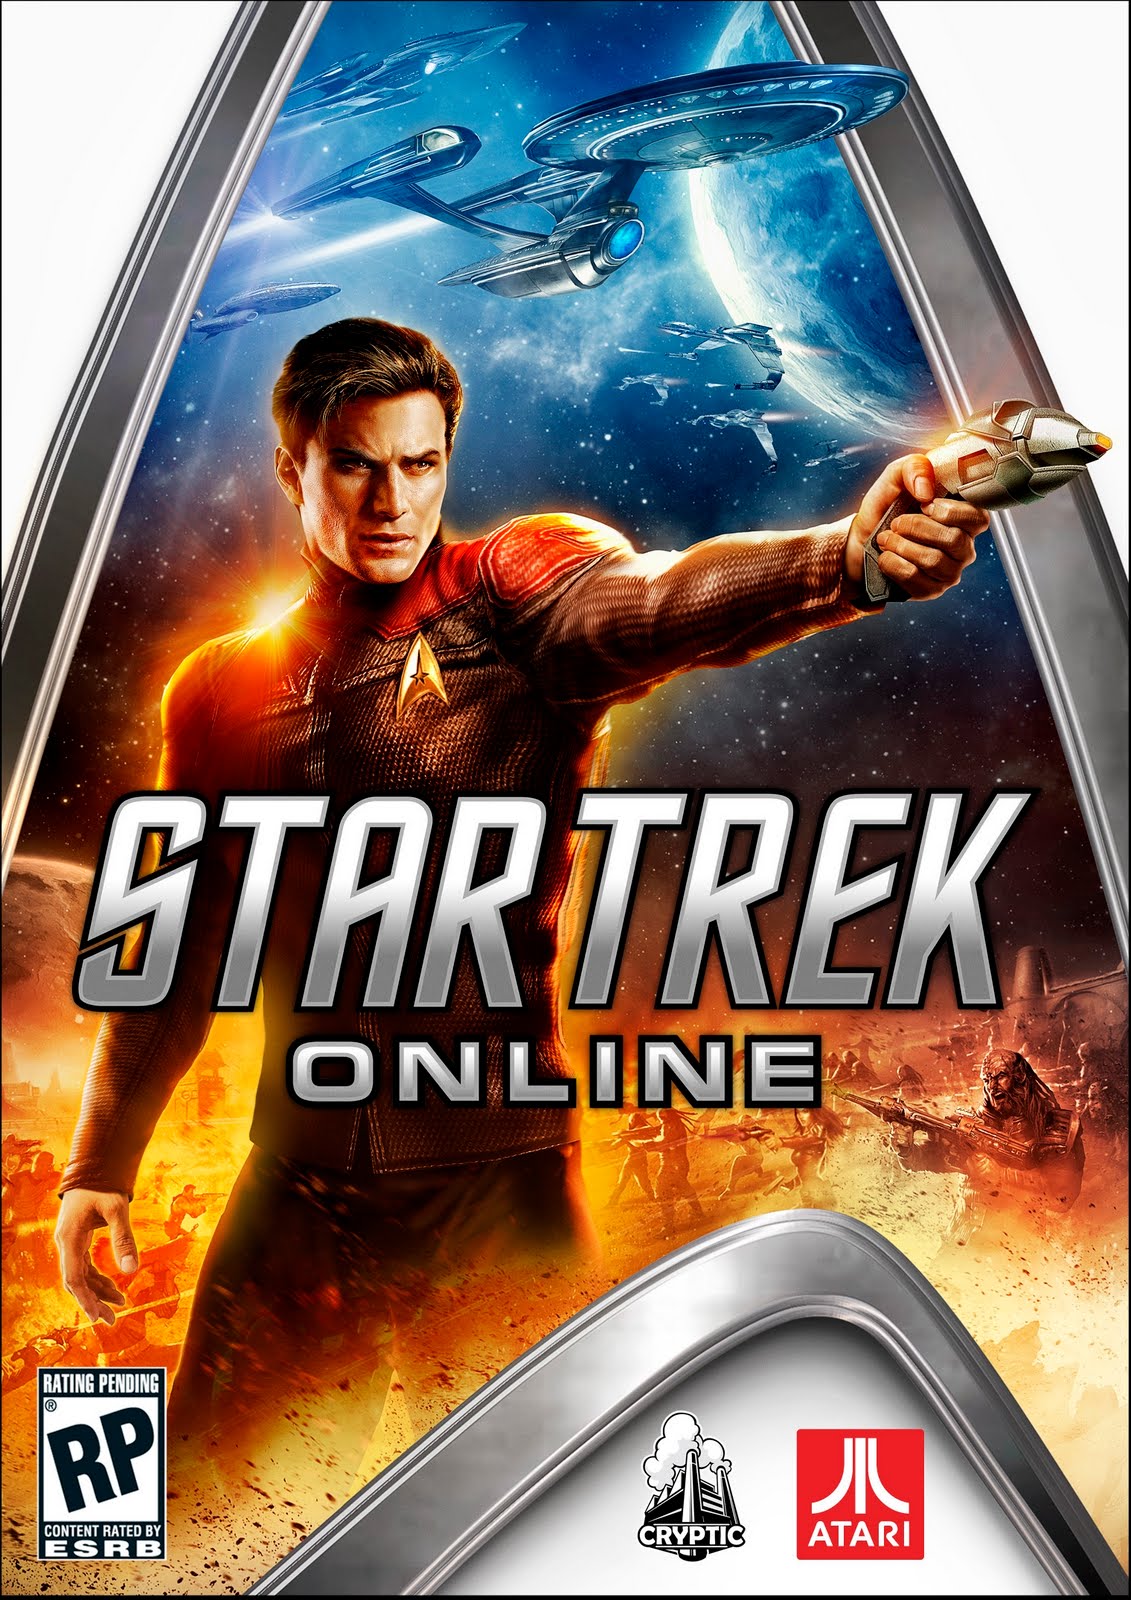 Play Anime Games Online - Star Trek Alien Domain, HISTORICA, RAN Online  Options